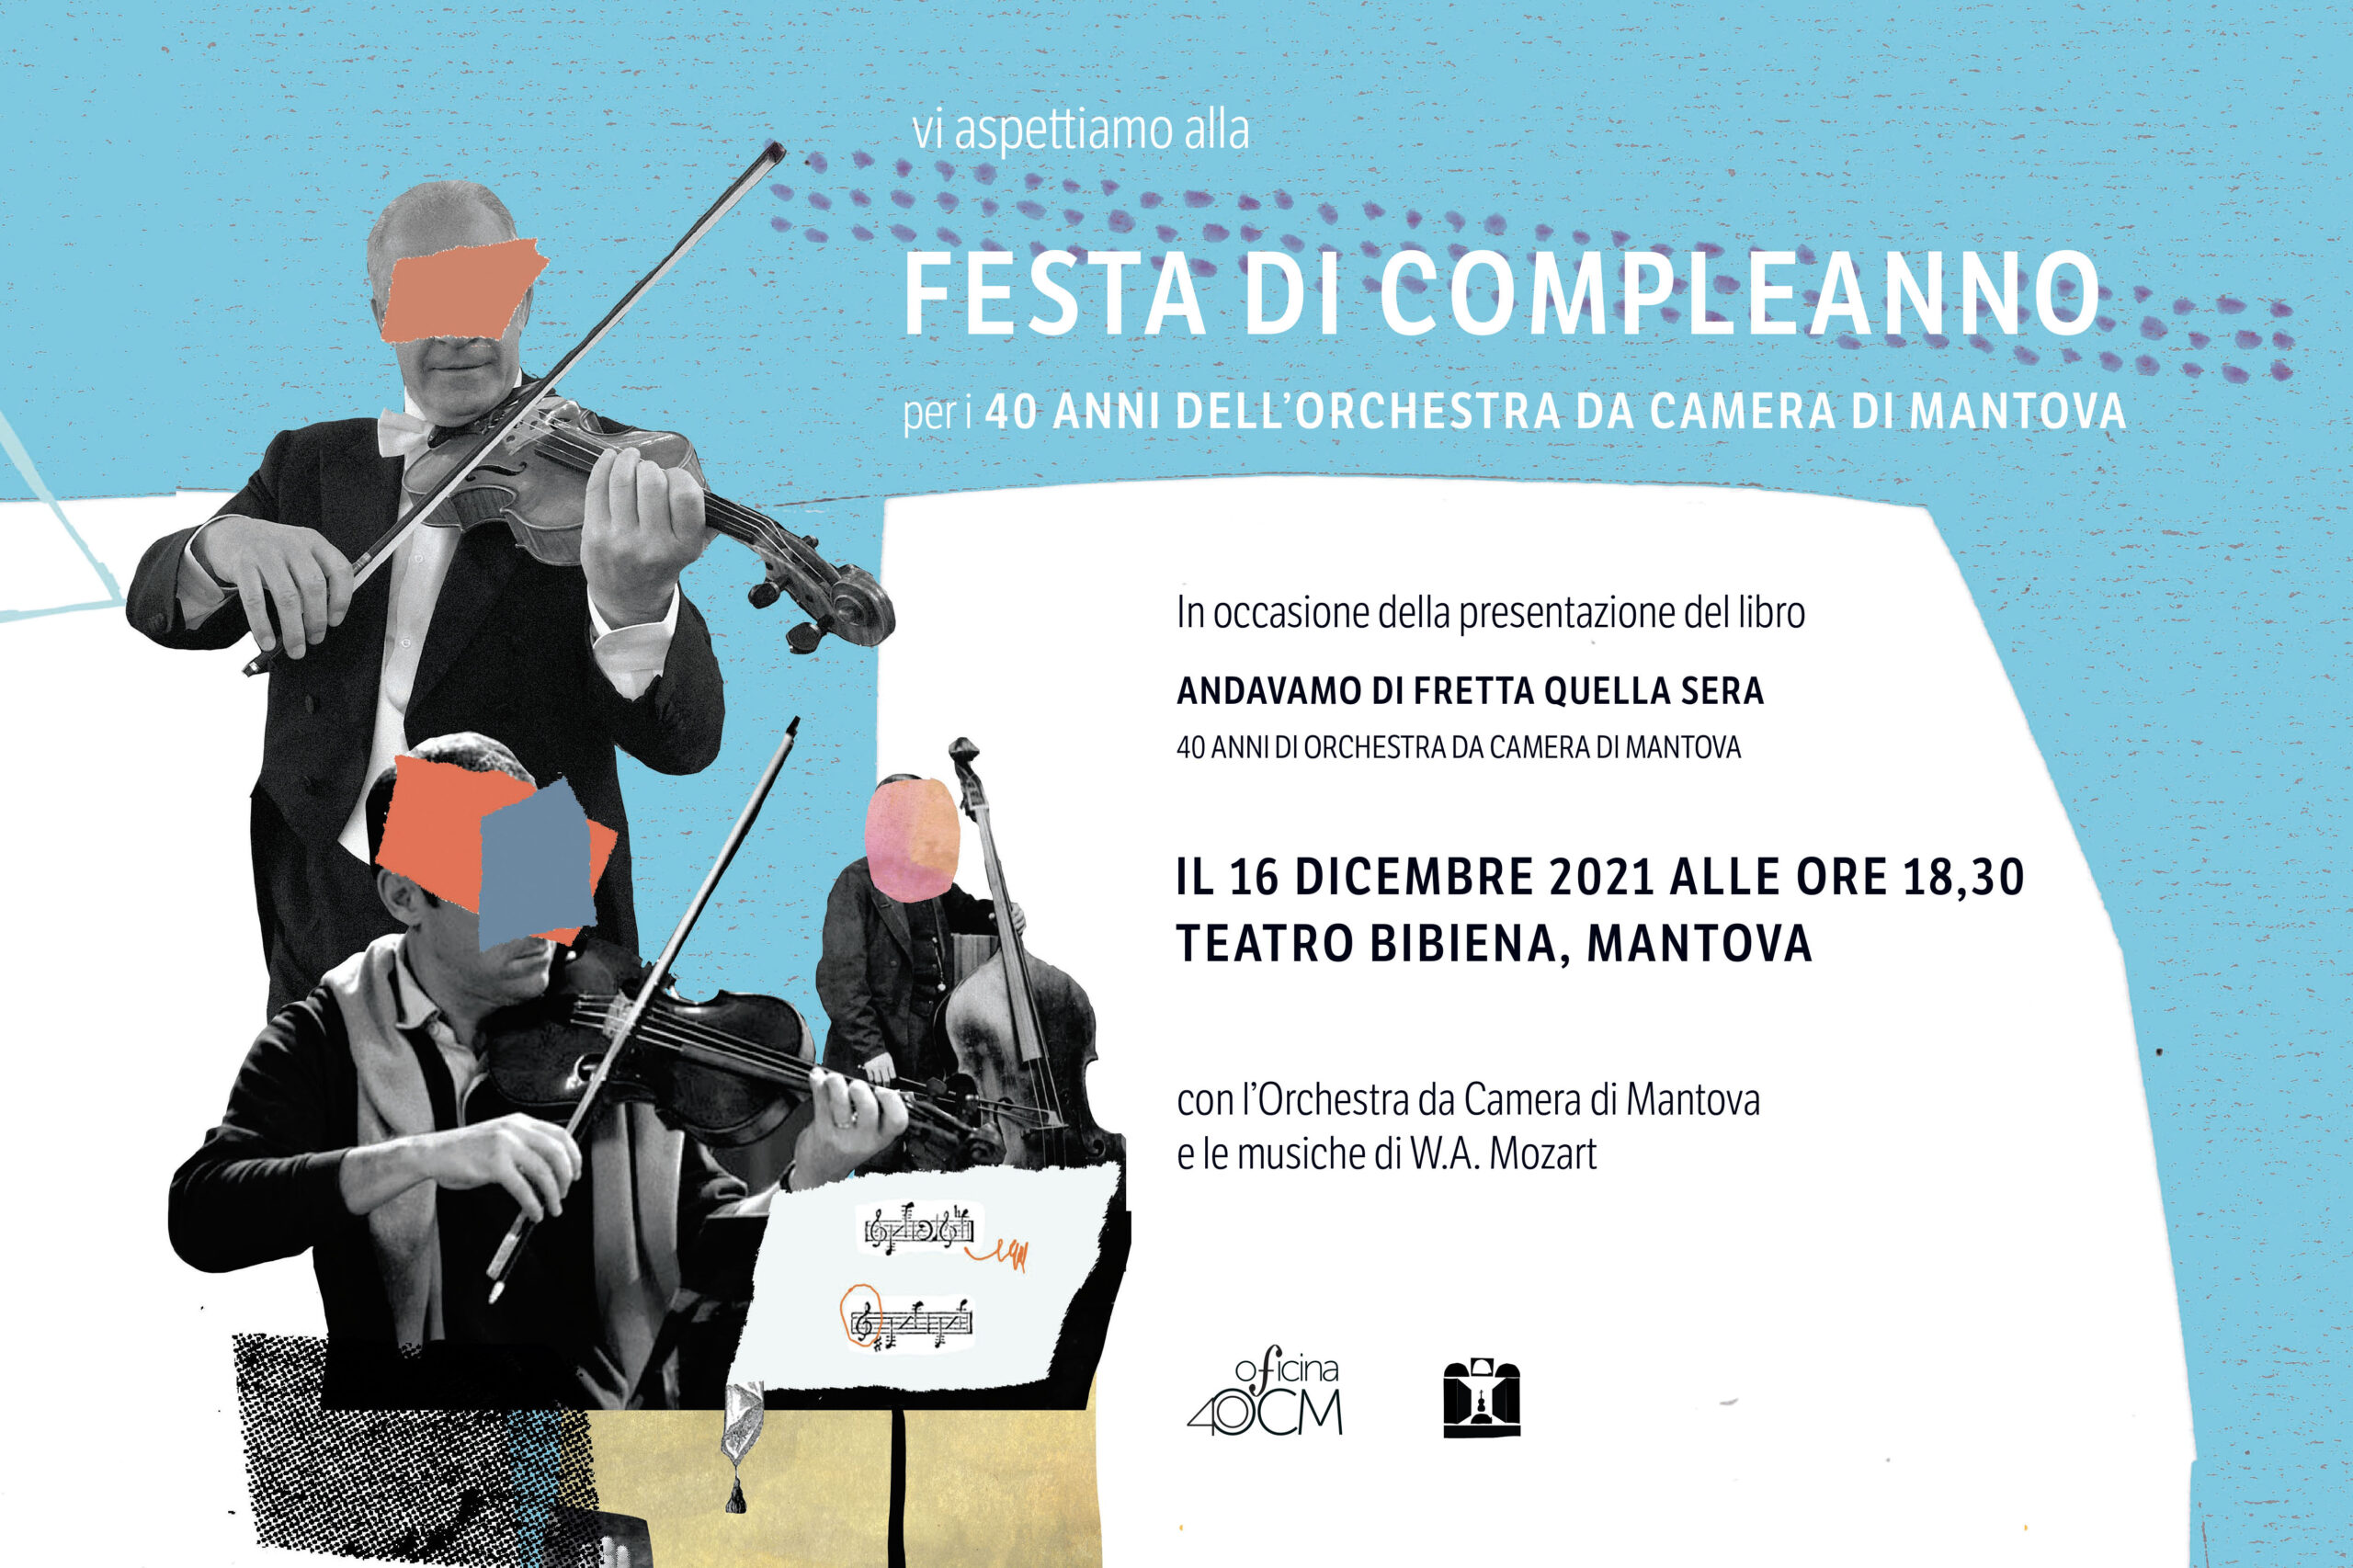 Buon compleanno OCM! Giovedì 16 dicembre, al Teatro Bibiena, festeggia con noi i 40 anni dell’Orchestra!